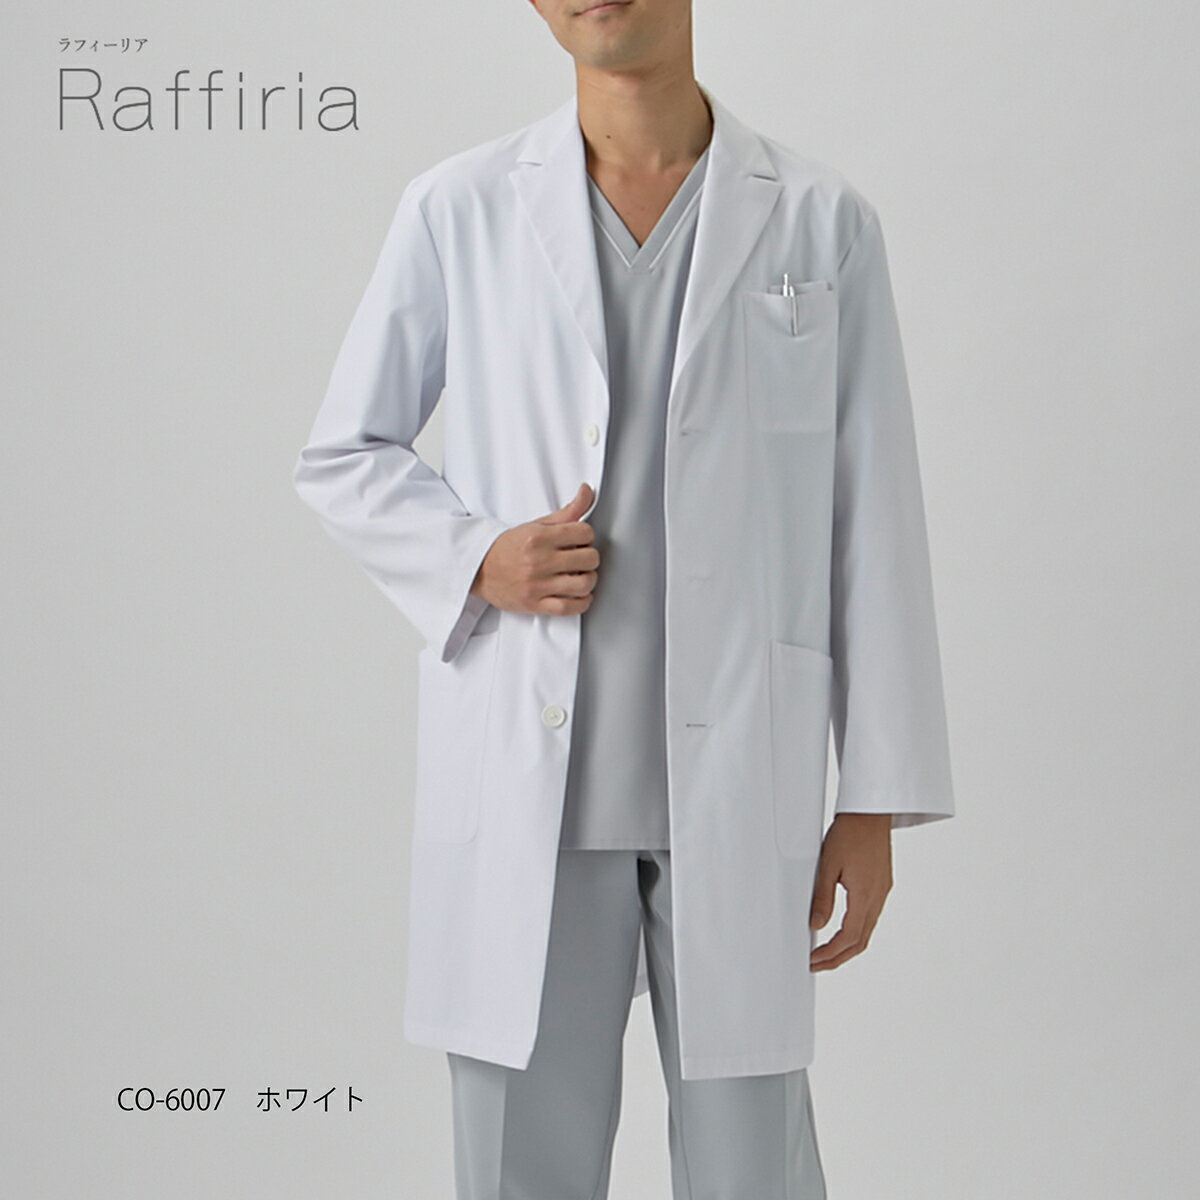 白衣 男性 ドクターコート ホワイト オンワード CO-6007 メンズ ショート 診察衣 白 速乾 形態安定 二重ポケット